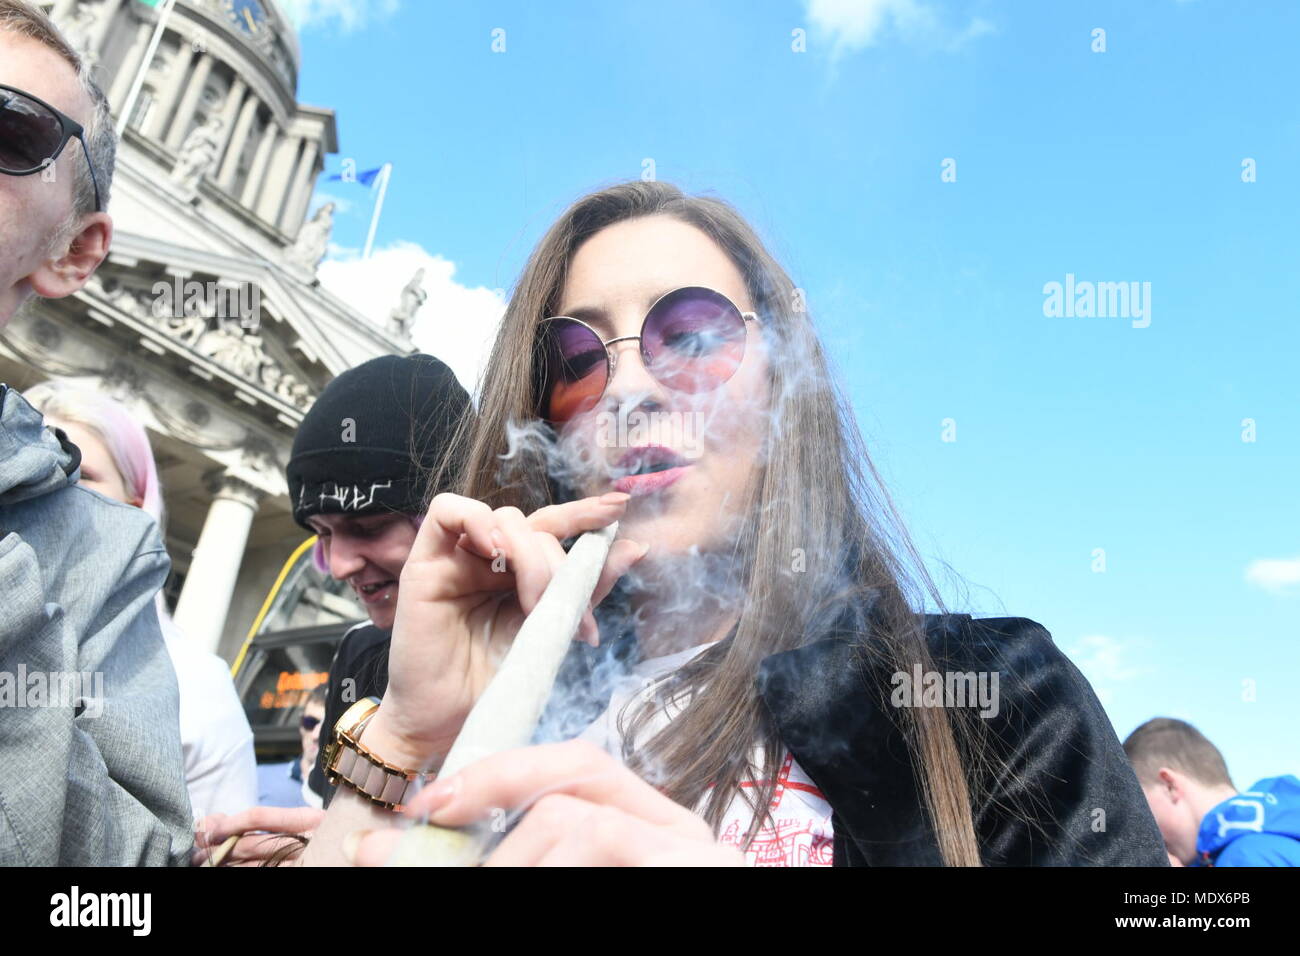 Dublin, Irland. April 2018 20. Irland: Menschen außerhalb der Regierung nahe stehenden Gebäude in Dublin sammeln Cannabis auf iternational Marihuana Tag Gutschrift zu Rauch: John Rooney/Alamy leben Nachrichten Stockfoto